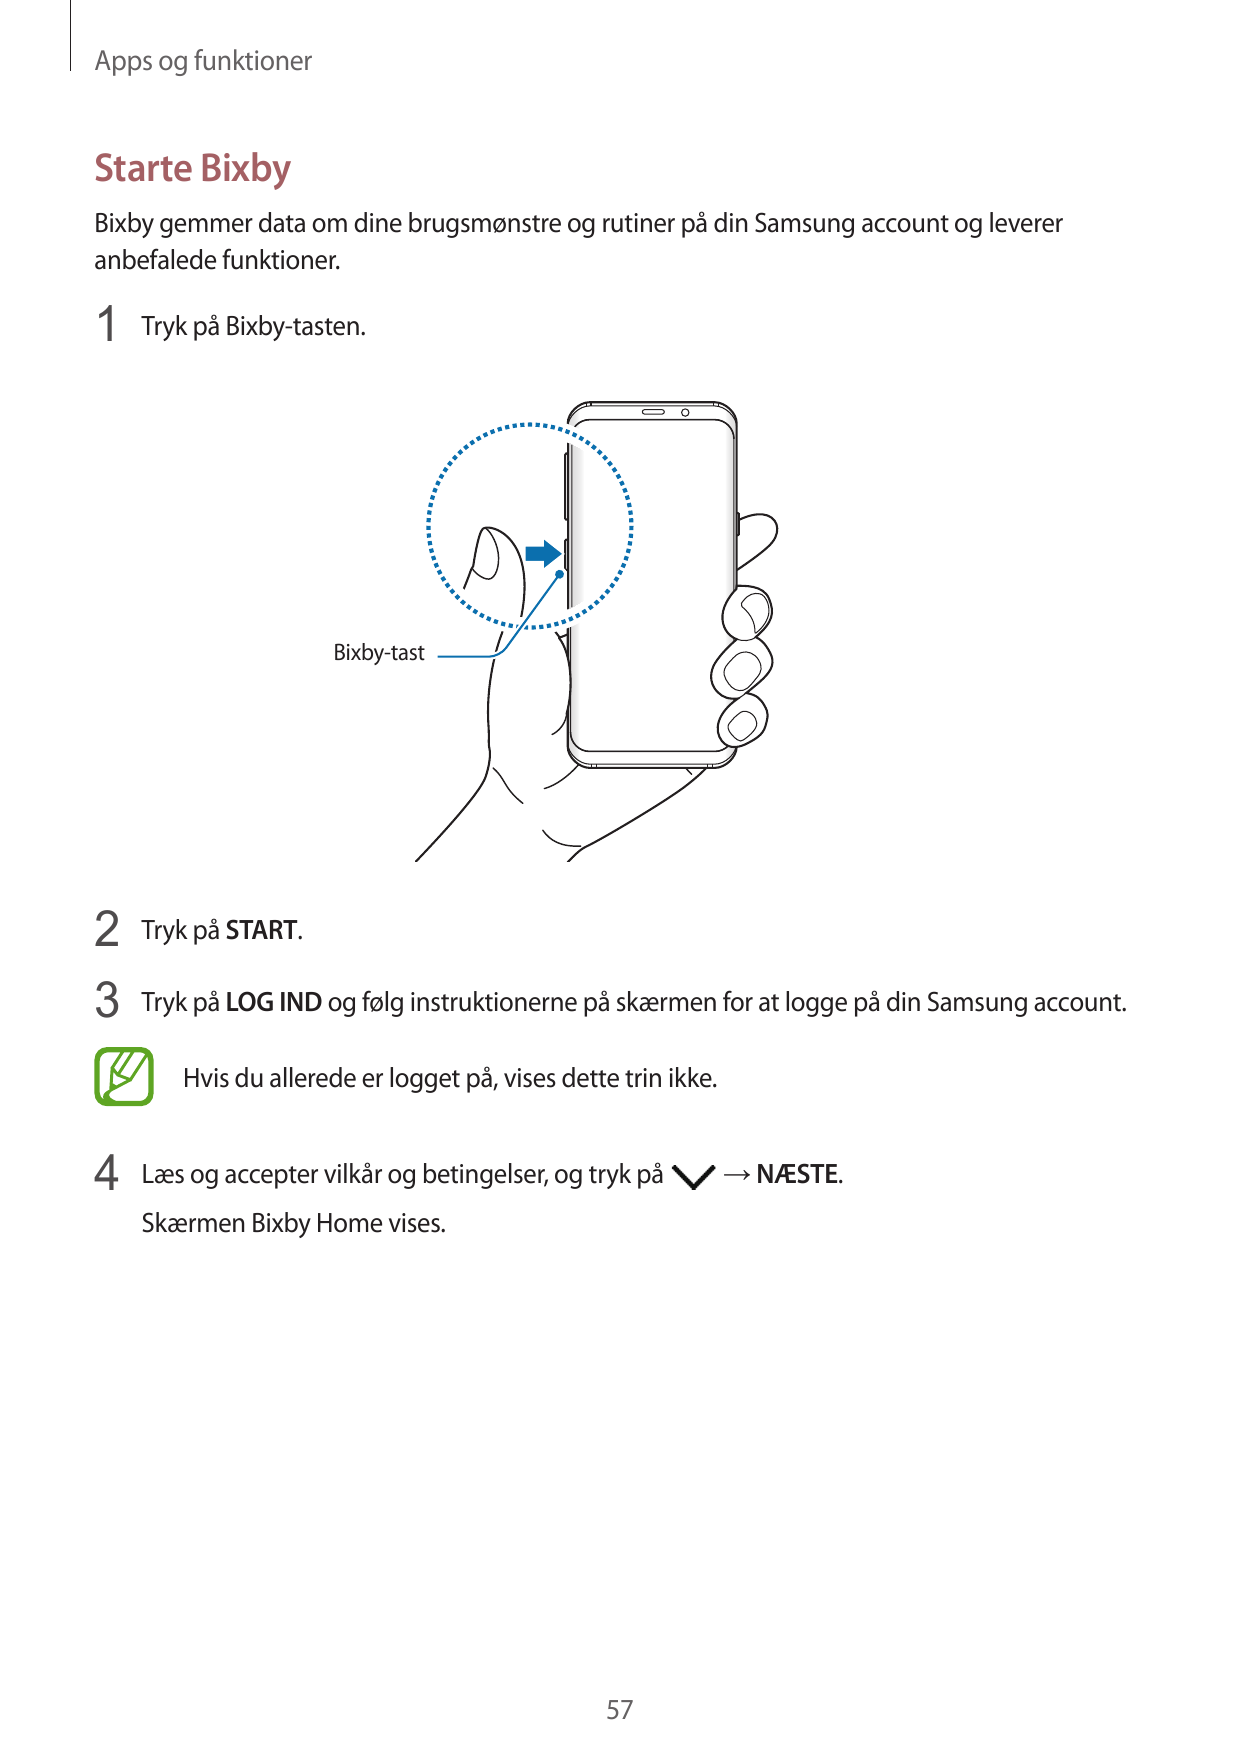 Apps og funktionerStarte BixbyBixby gemmer data om dine brugsmønstre og rutiner på din Samsung account og levereranbefalede funk